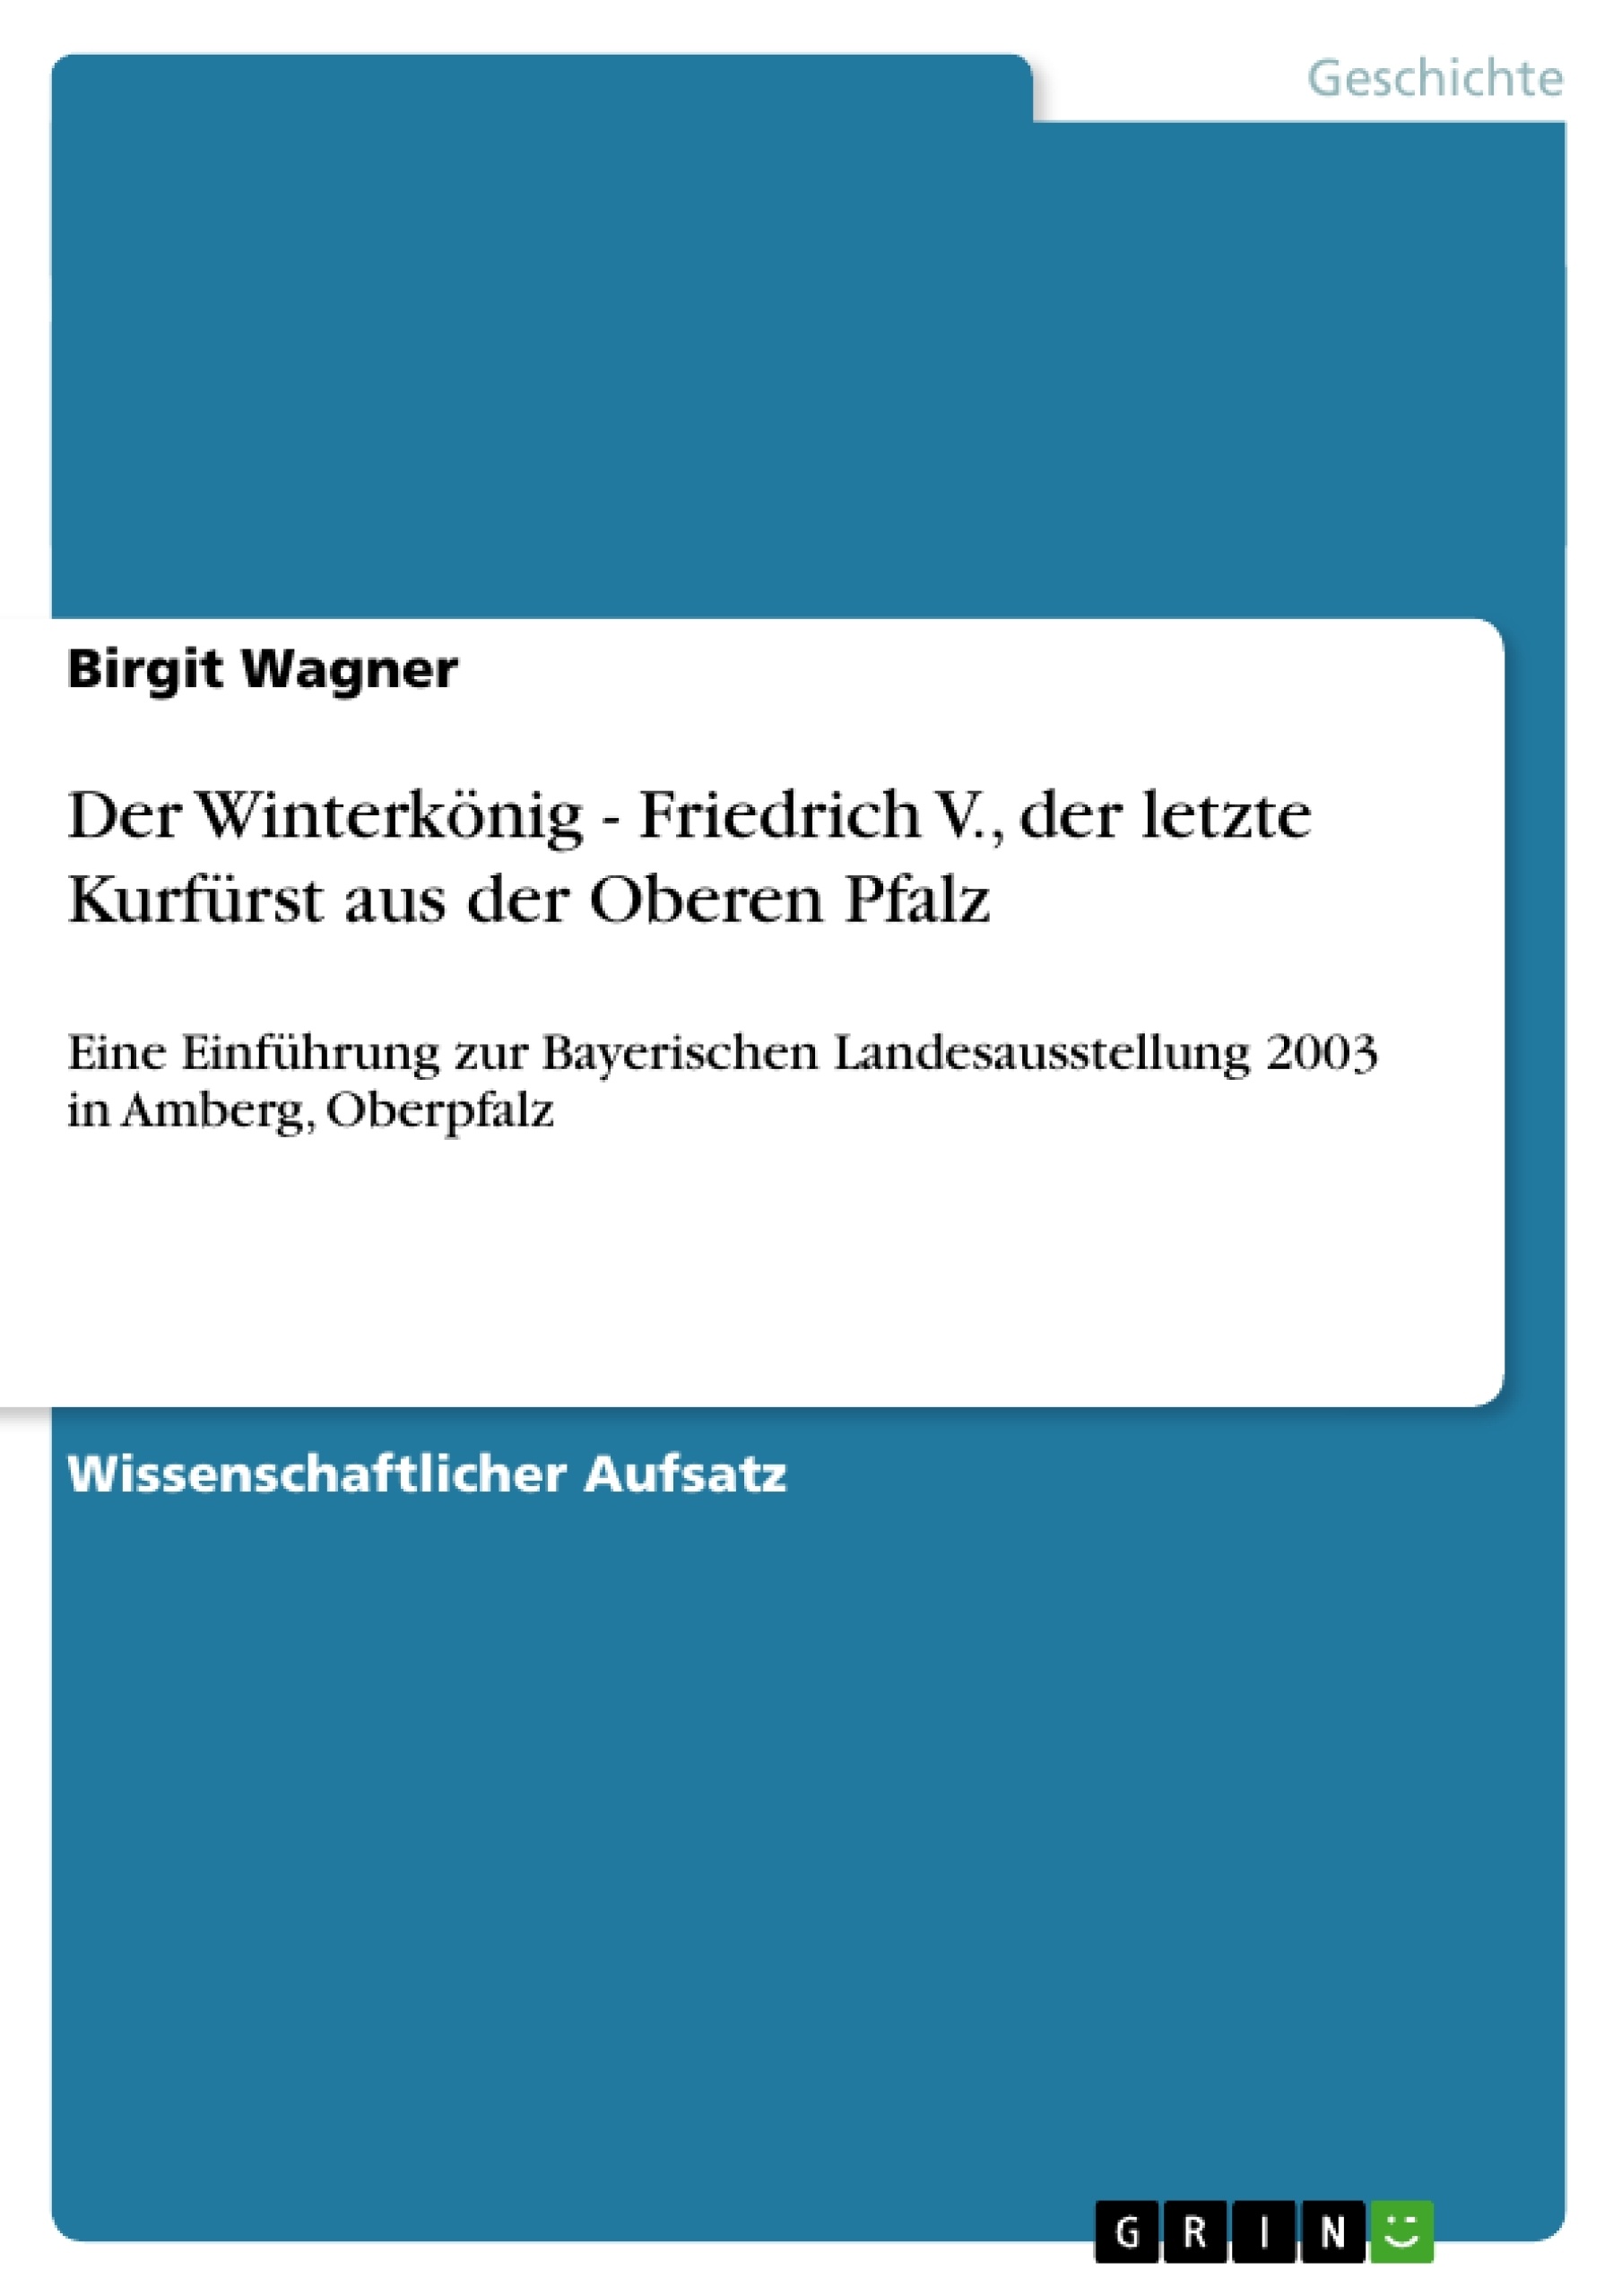 Title: Der Winterkönig - Friedrich V., der letzte Kurfürst aus der Oberen Pfalz